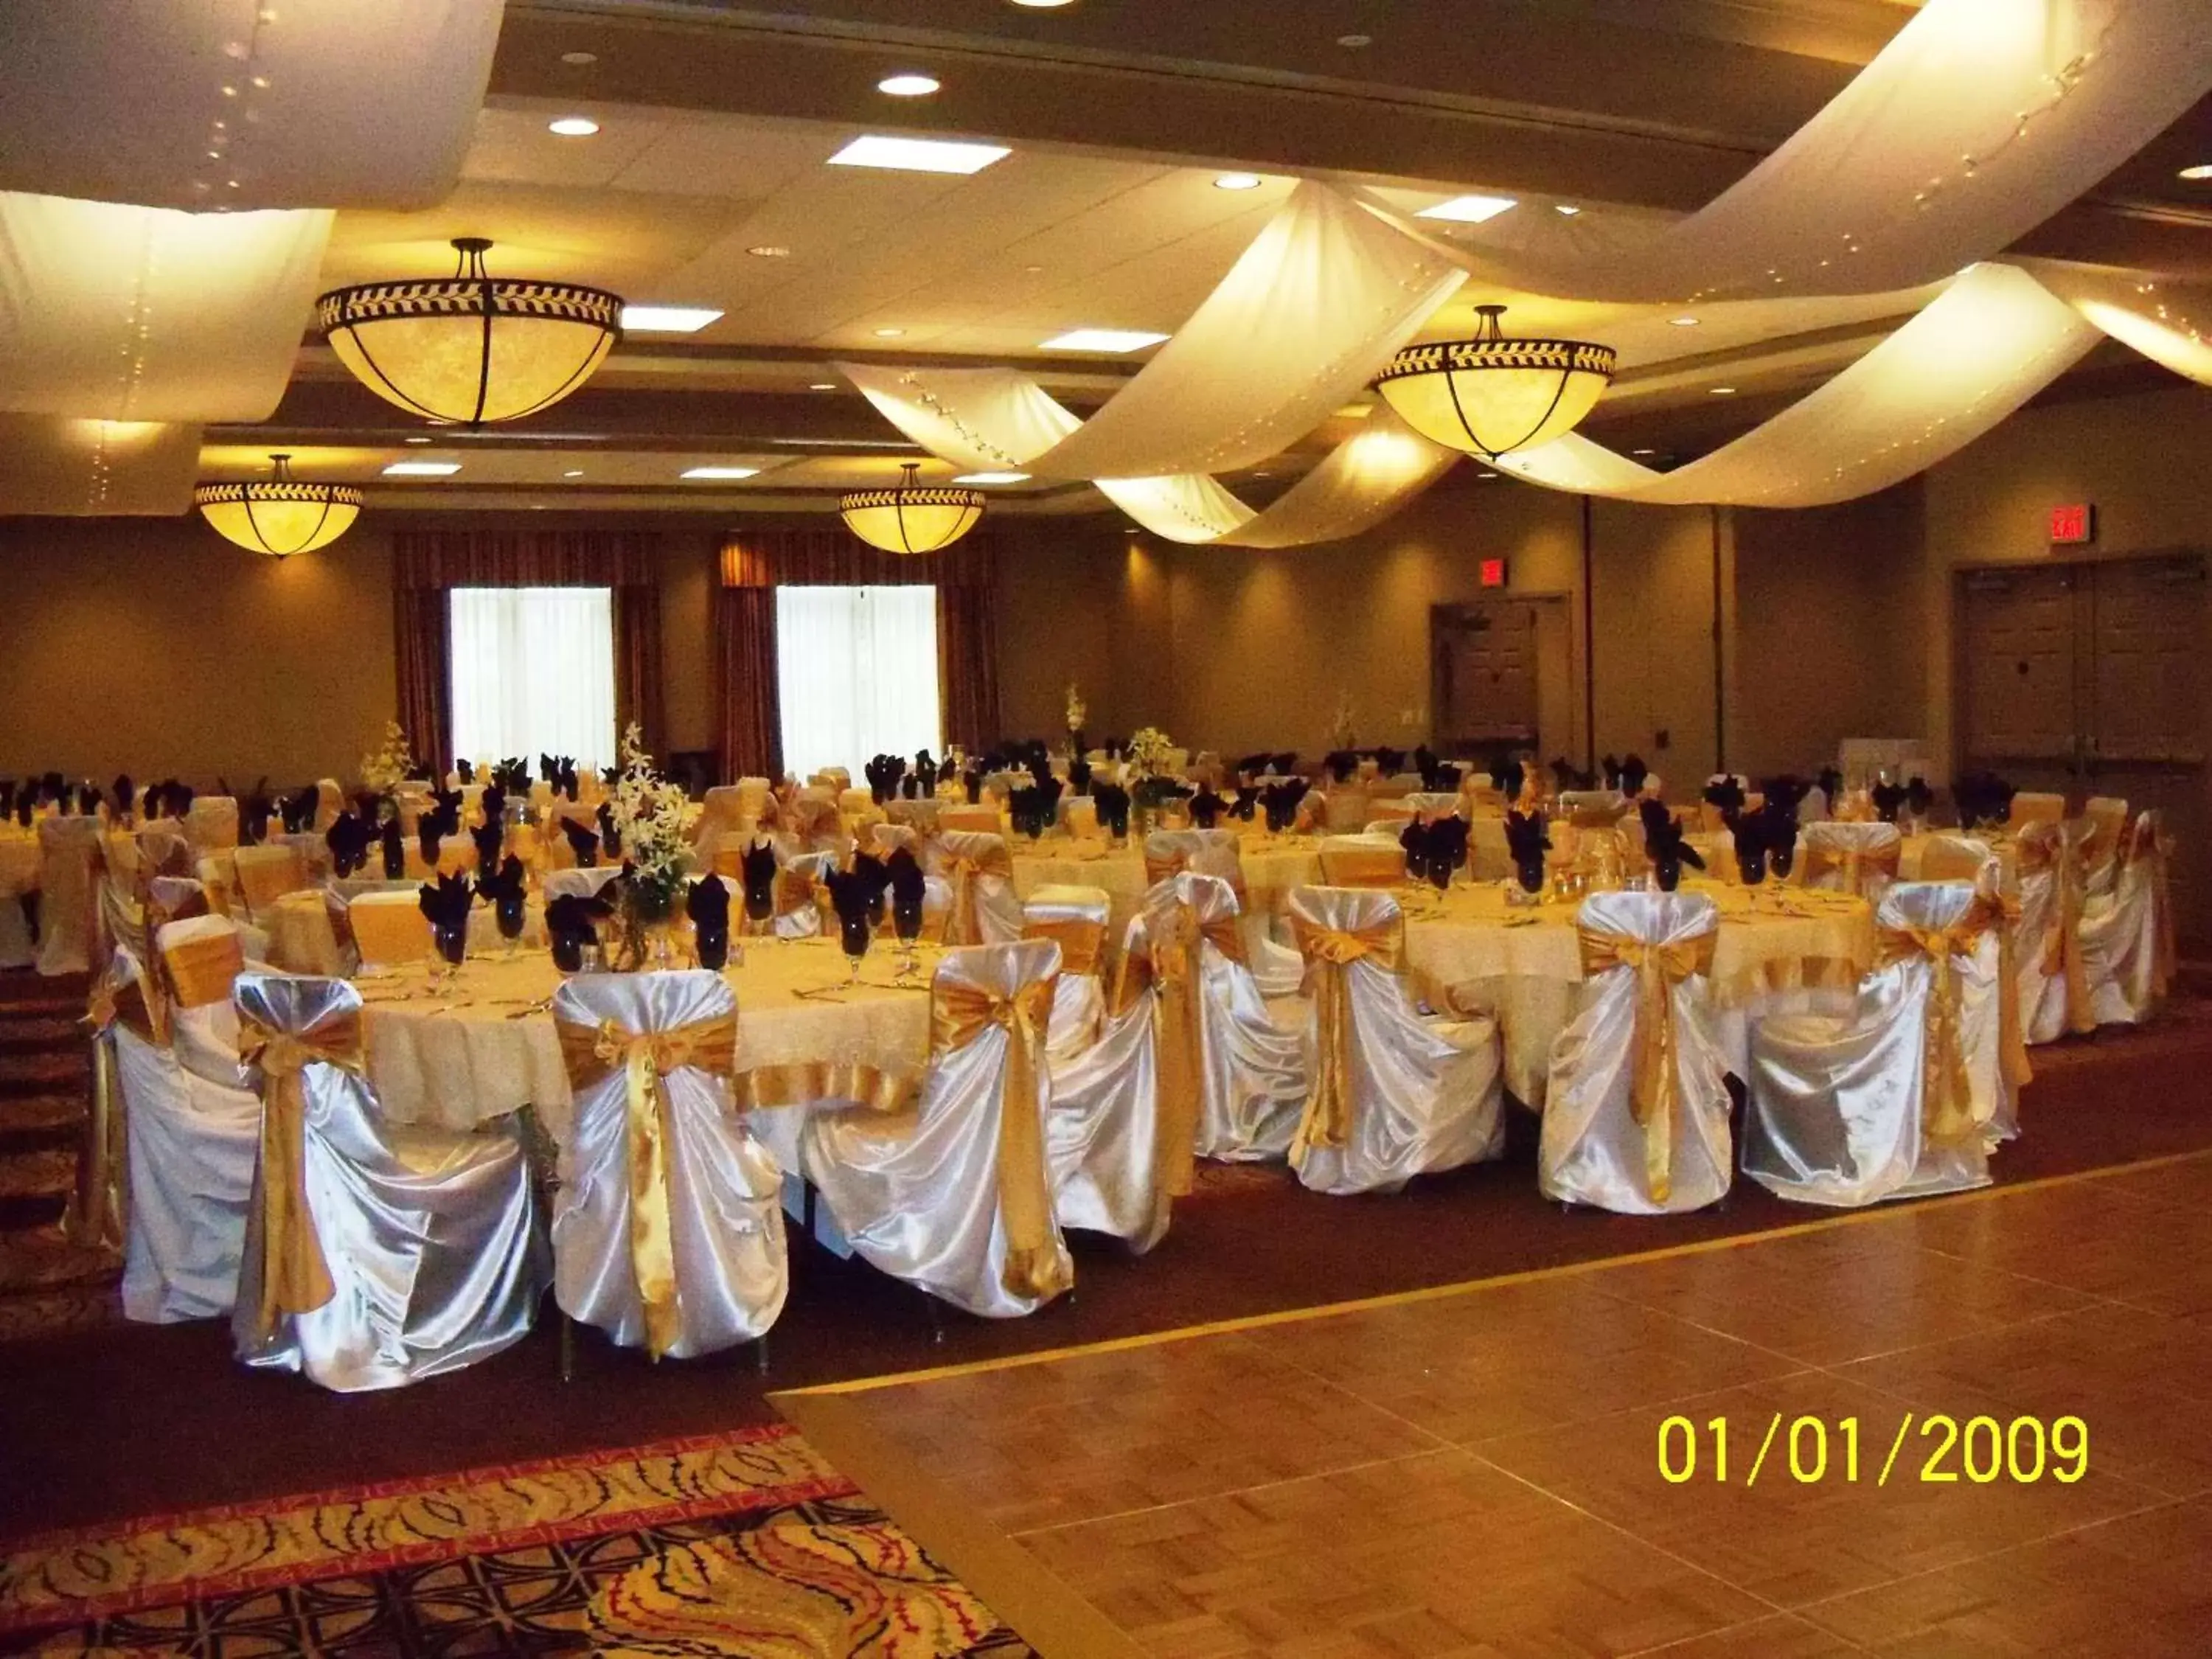 Meeting/conference room, Banquet Facilities in Hilton Garden Inn Pensacola Airport/Medical Center